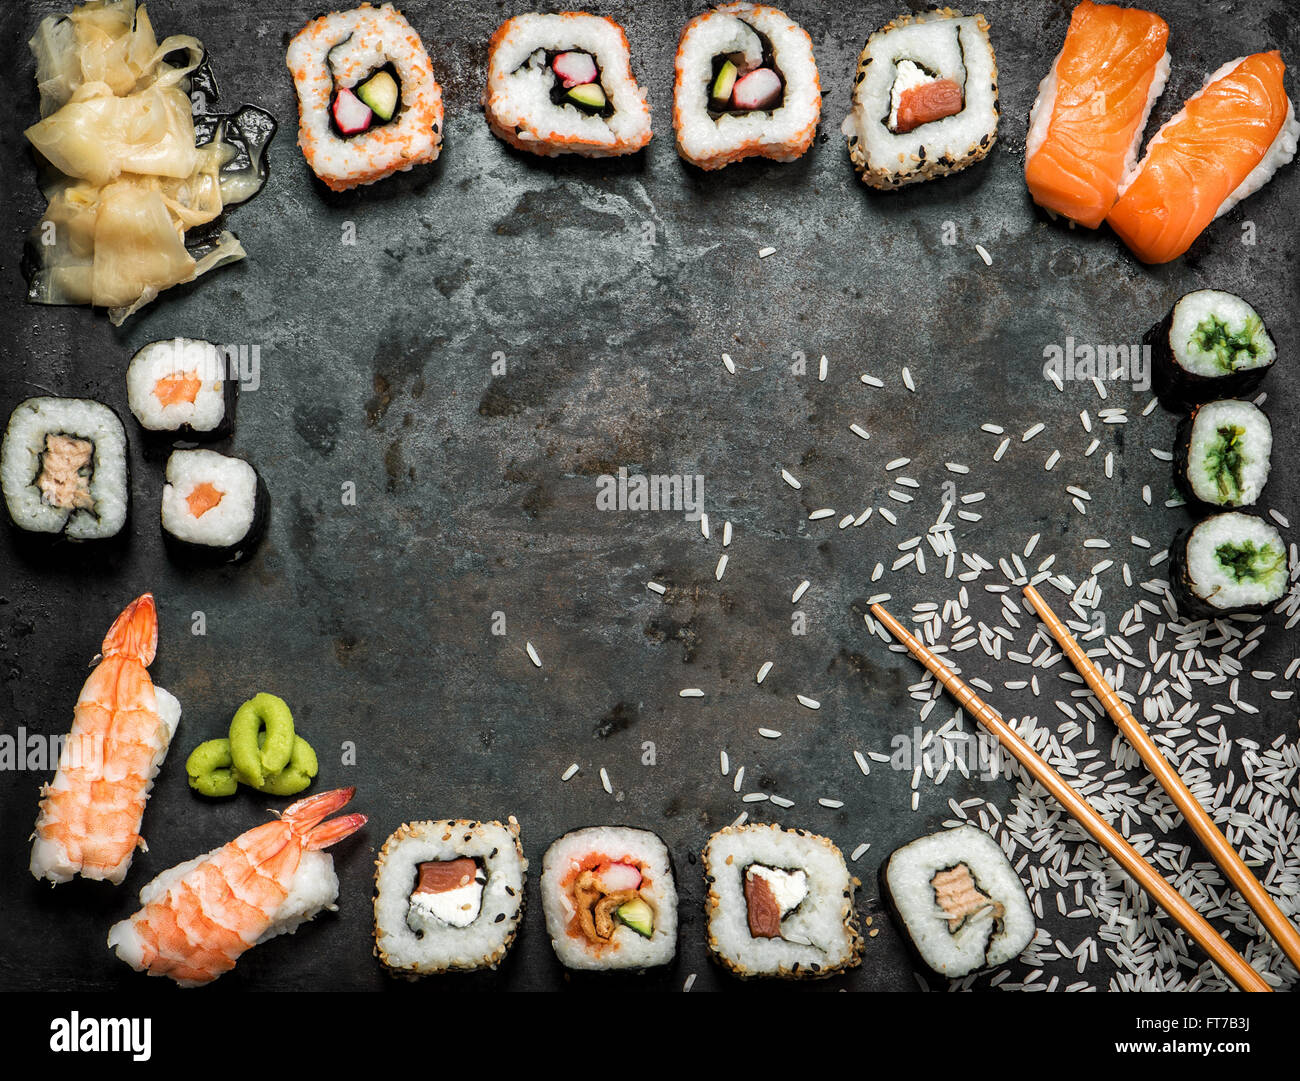 Sushi-Rollen, Maki, Nigiri, Lachs, Wasabi, Garnelen, Thunfisch, Tofu, Reis, Avocado, eingelegten Ingwer. Asiatische Küche-Hintergrund. Dunkel getönt Stockfoto